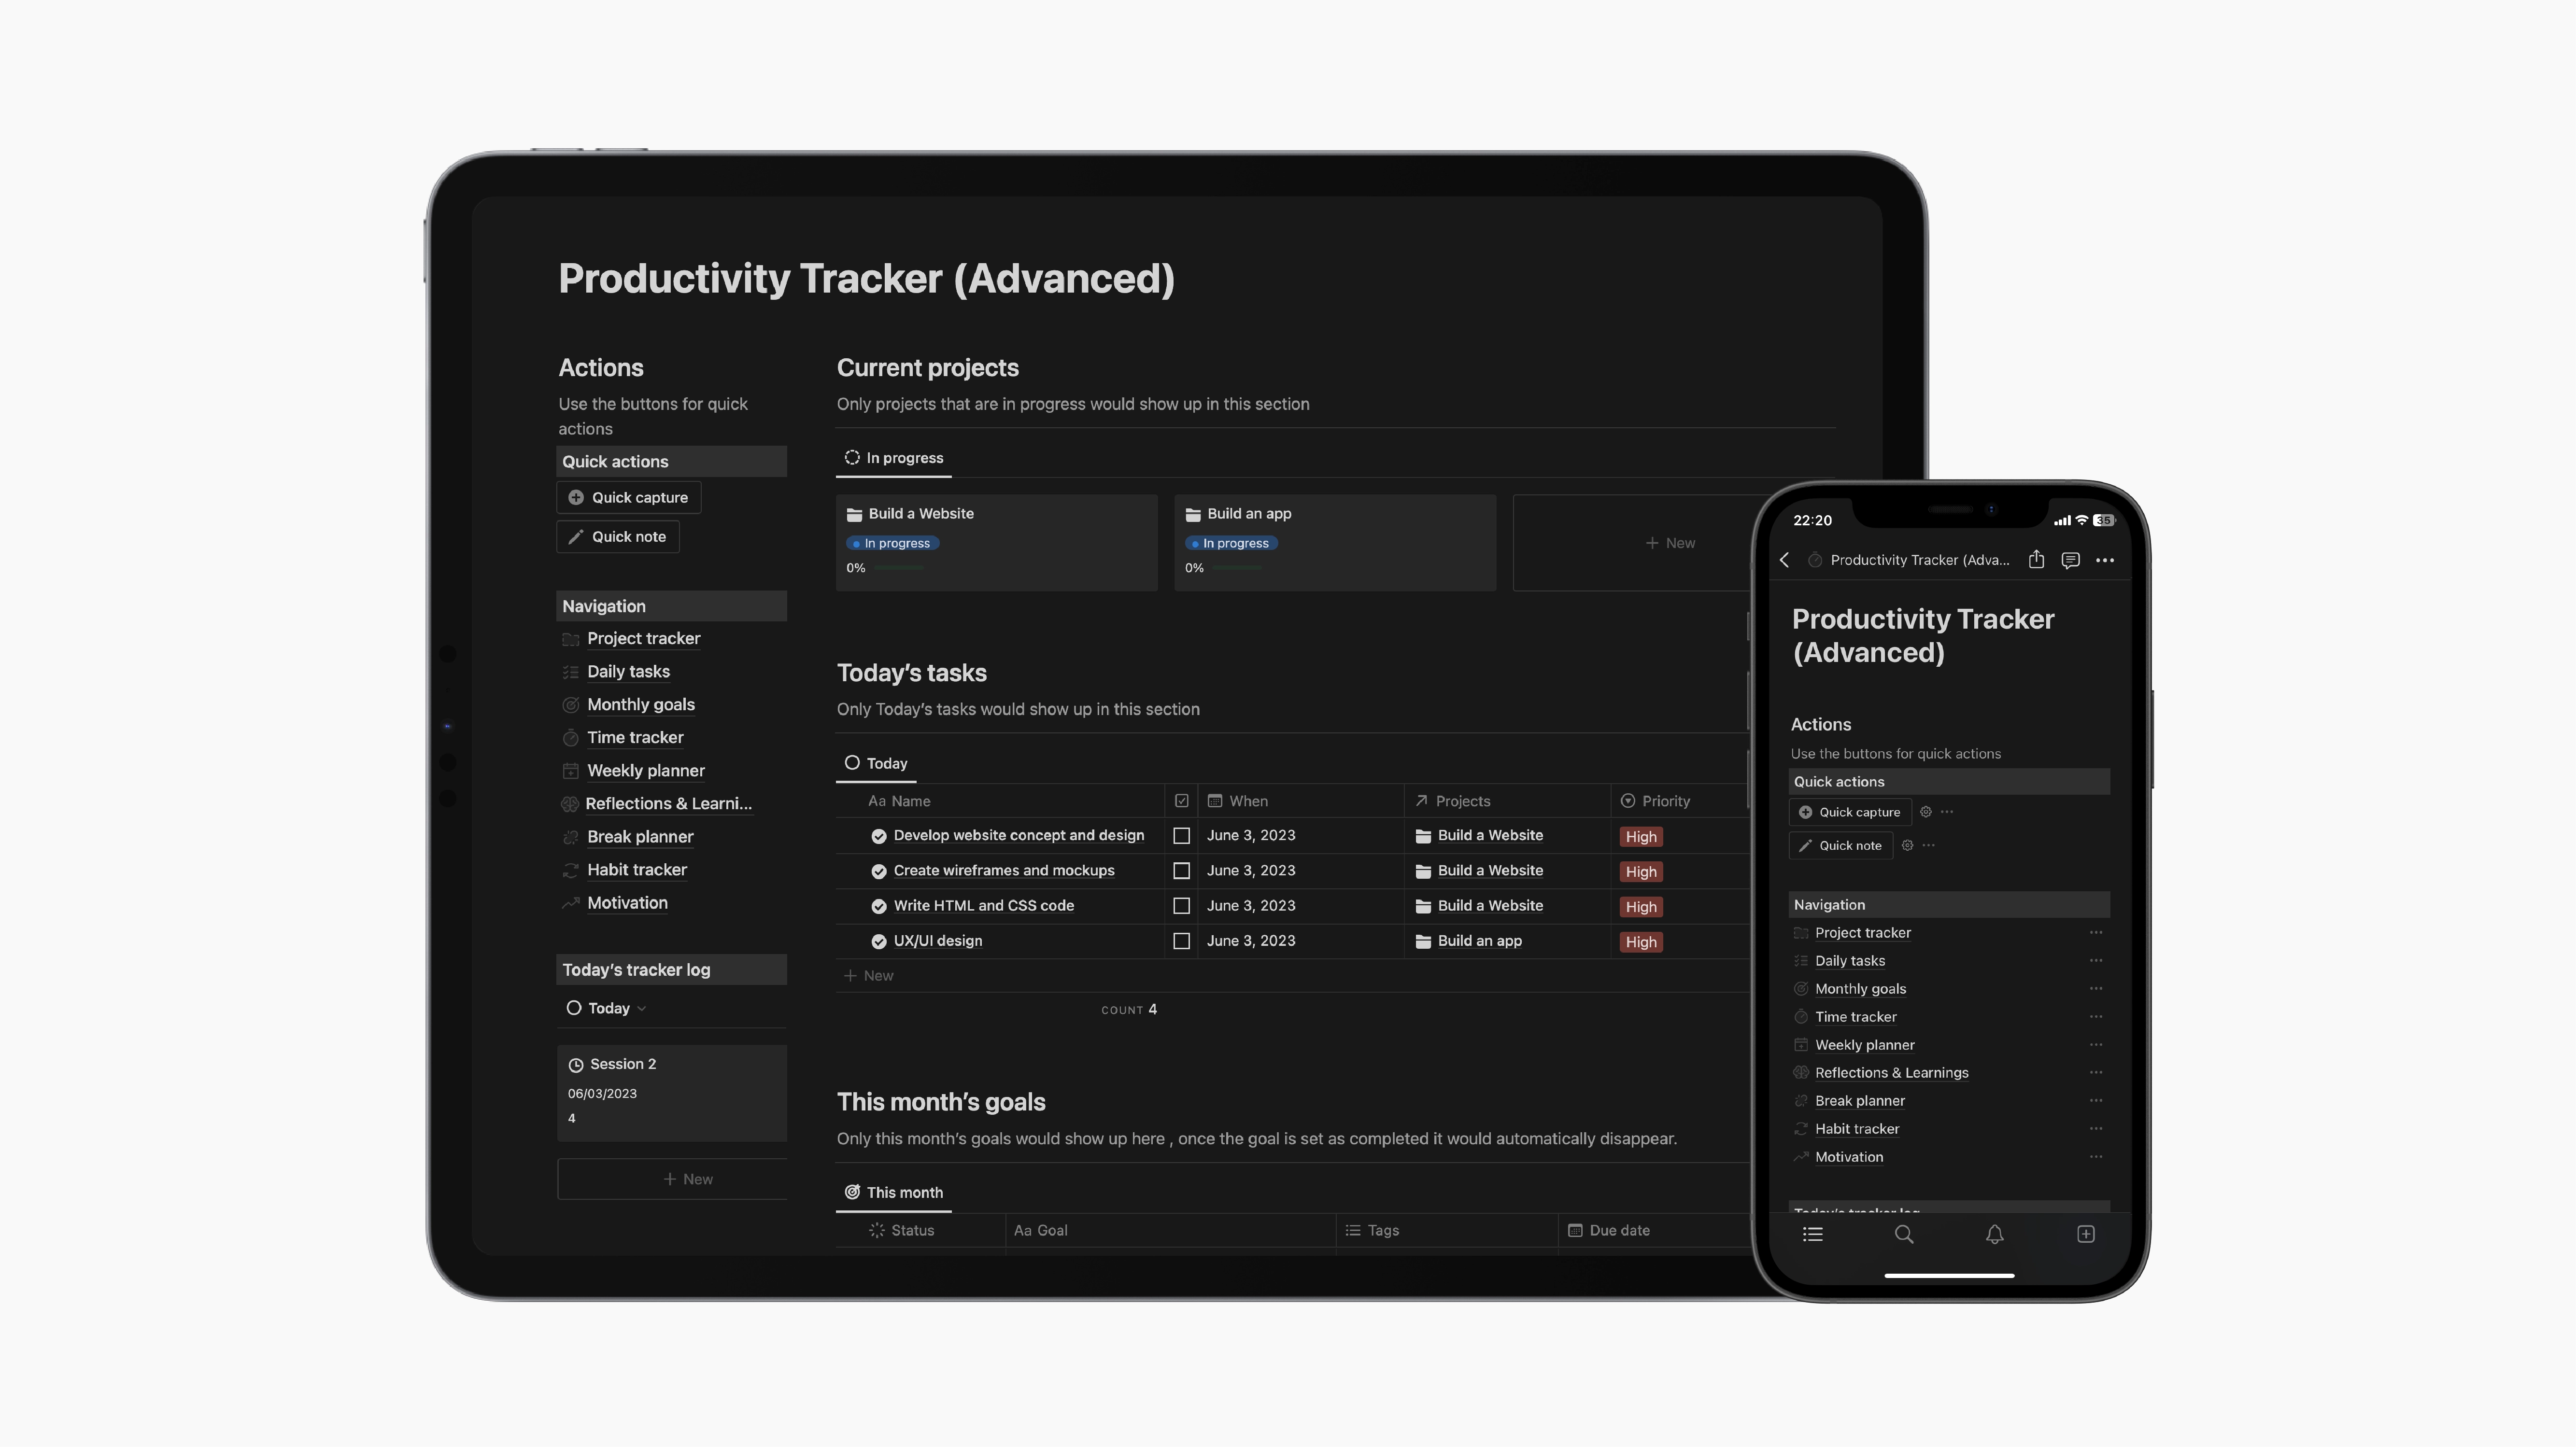 Notion  Productivity Tracker